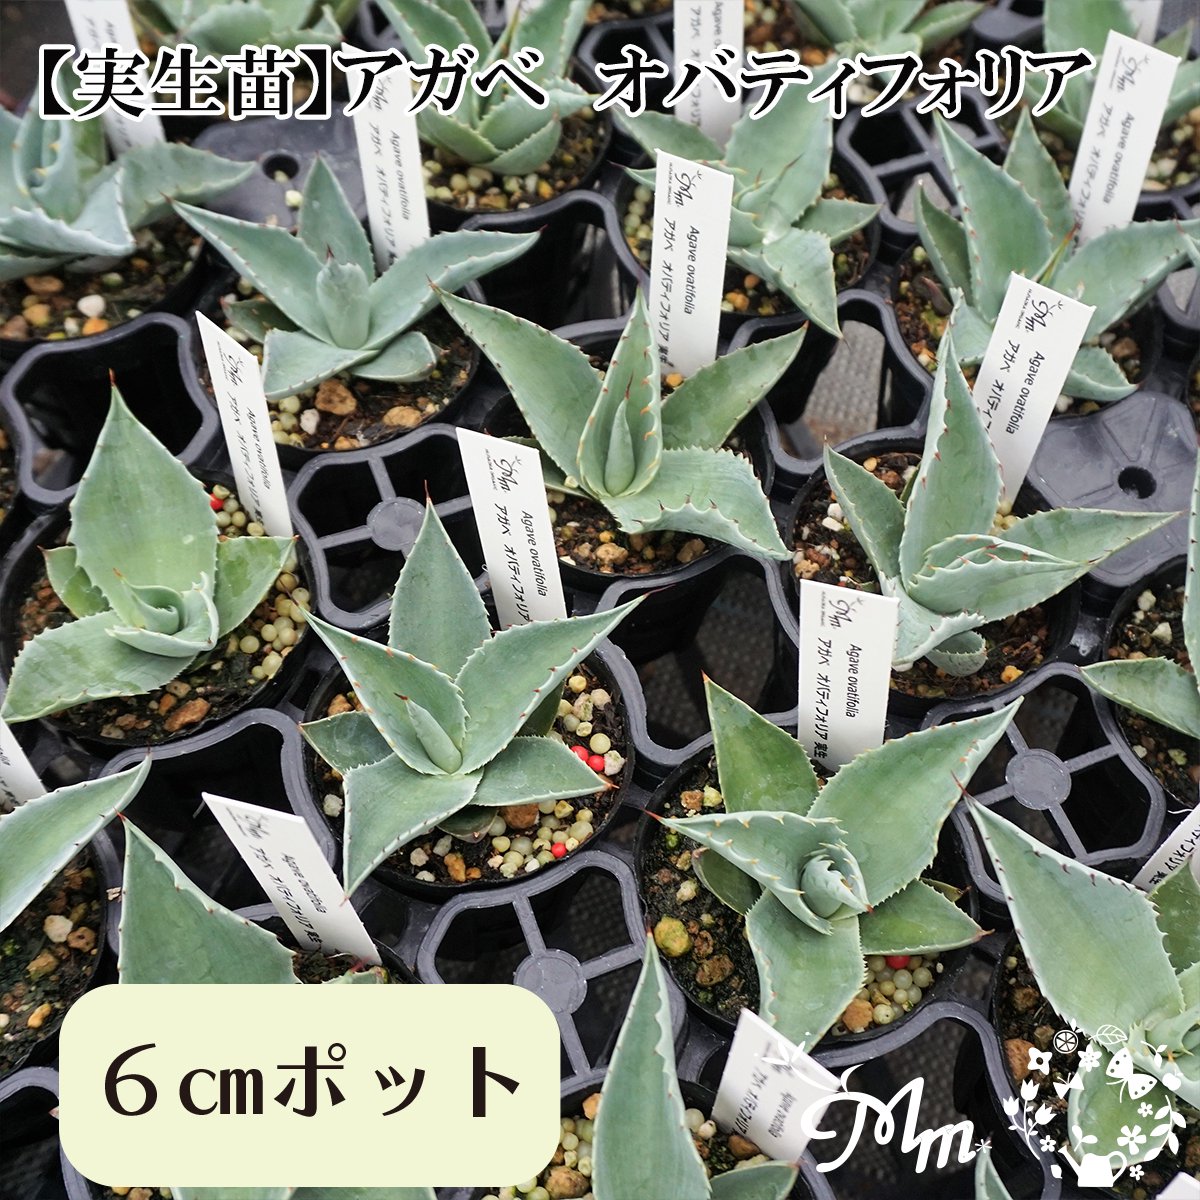 【実生苗(実生株)】Agave obatifolia(アガベ オバティフォリア)6�ポット苗